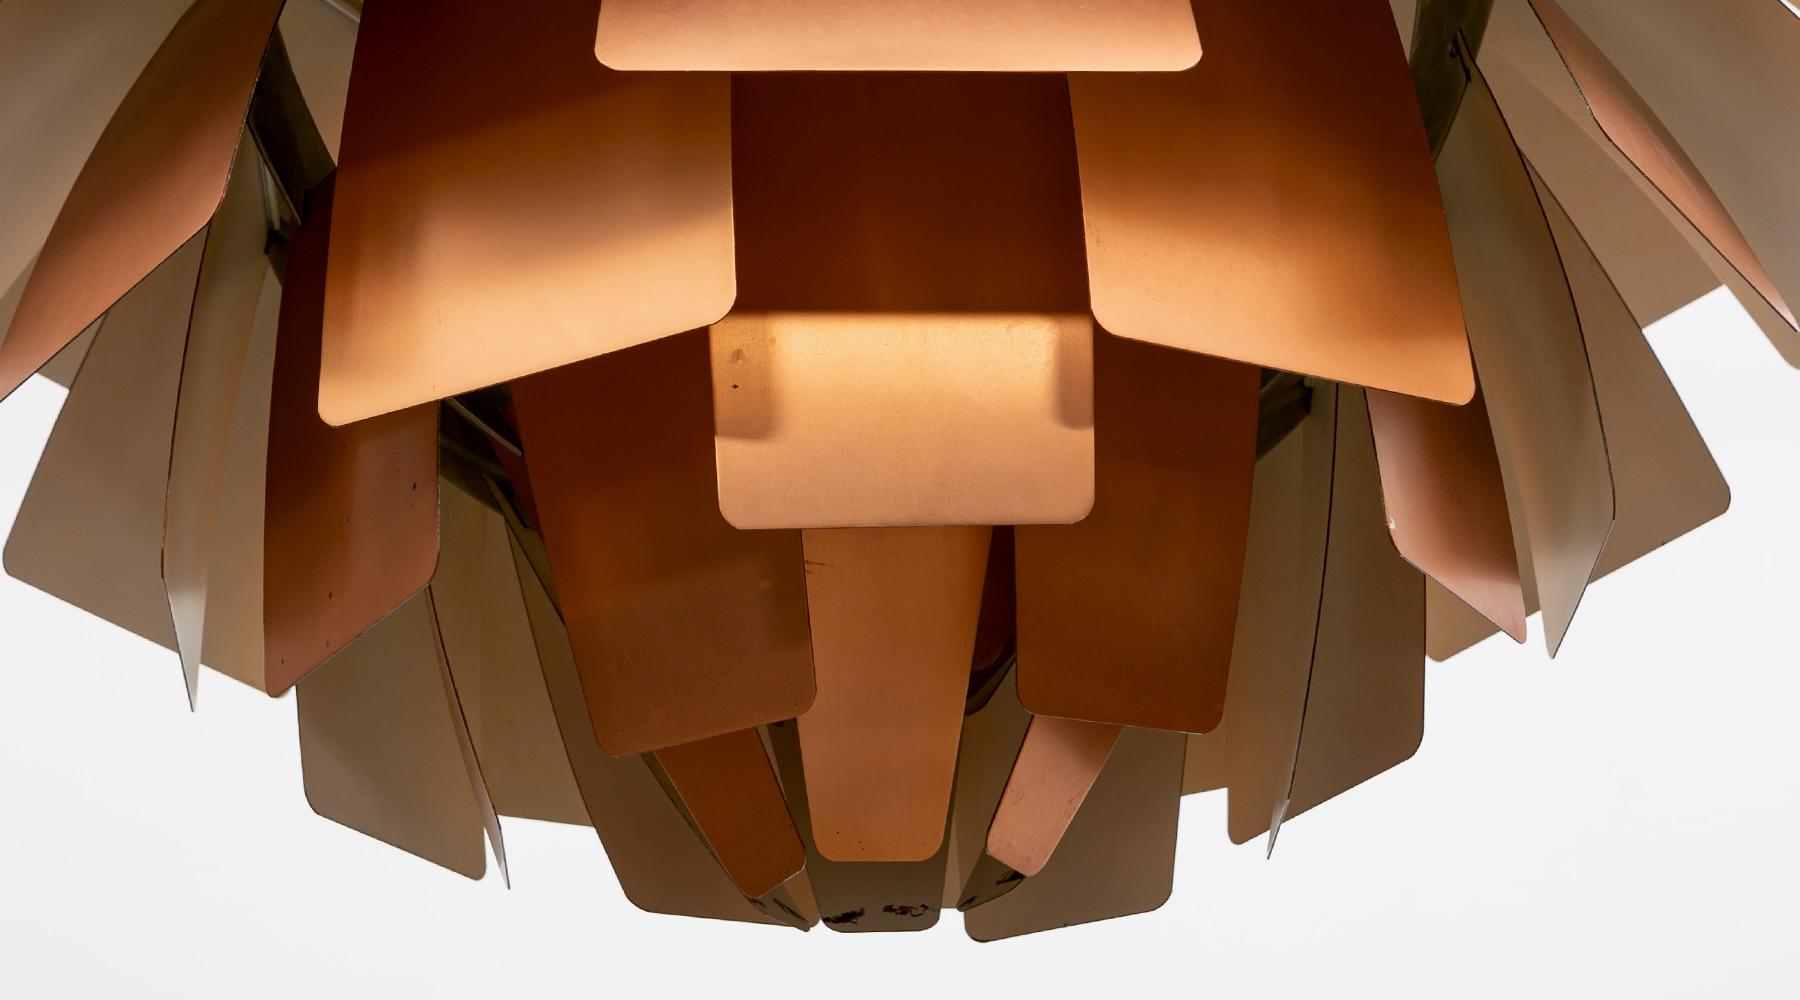 Danish 1950s Copper Ceiling Lamp 'Artichoke' by Poul Henningsen